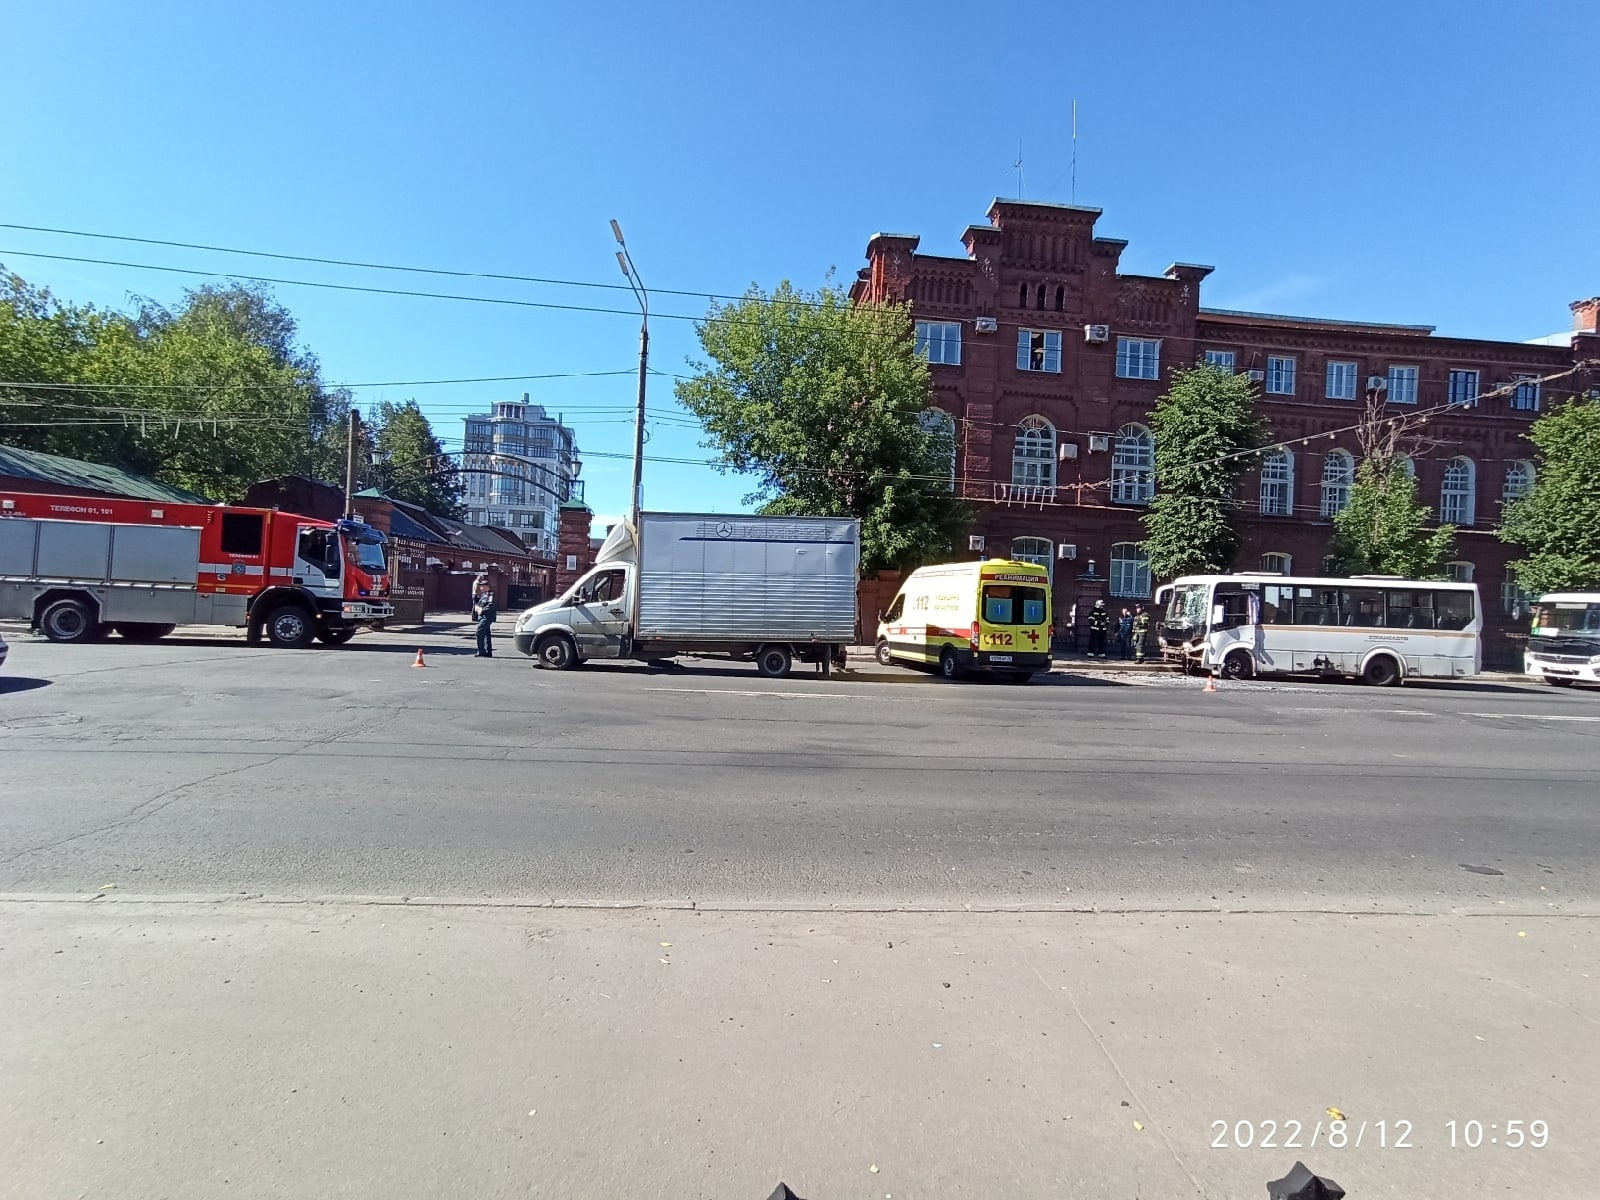 В Ярославле автобус с пассажирами врезался в грузовик: есть пострадавшие